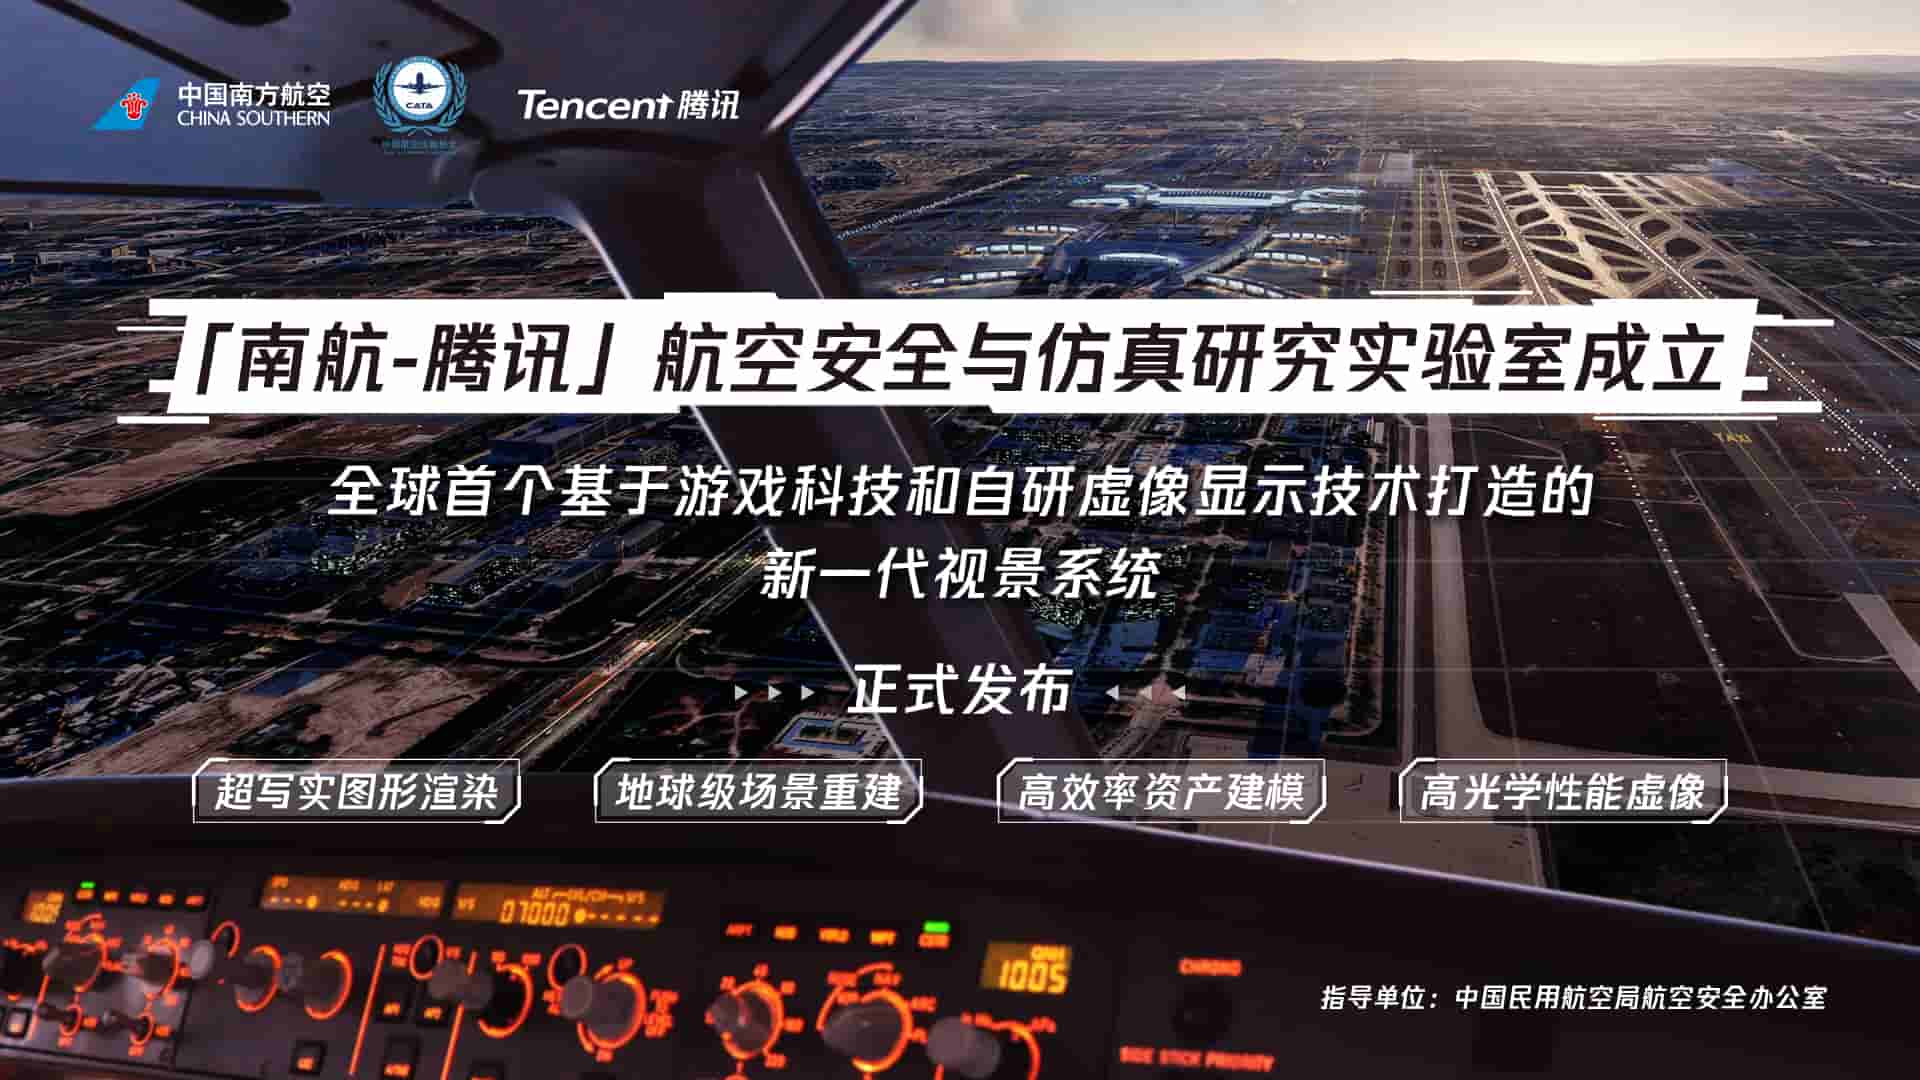 南航-腾讯联合发布自研全动飞行模拟机视景系统